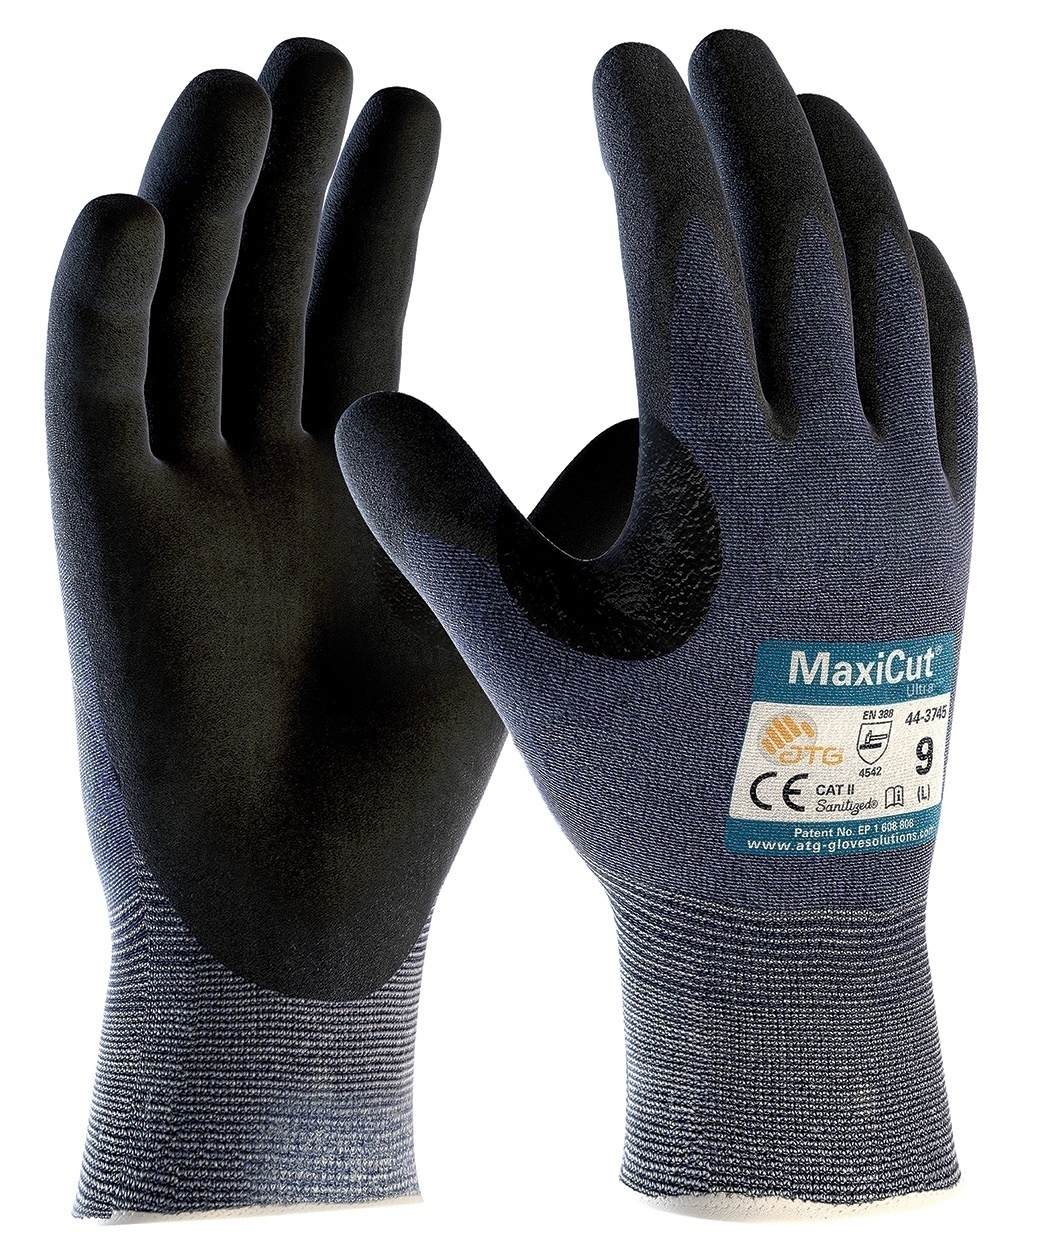 MaxiCut Ultra A3 Cut Level Gloves